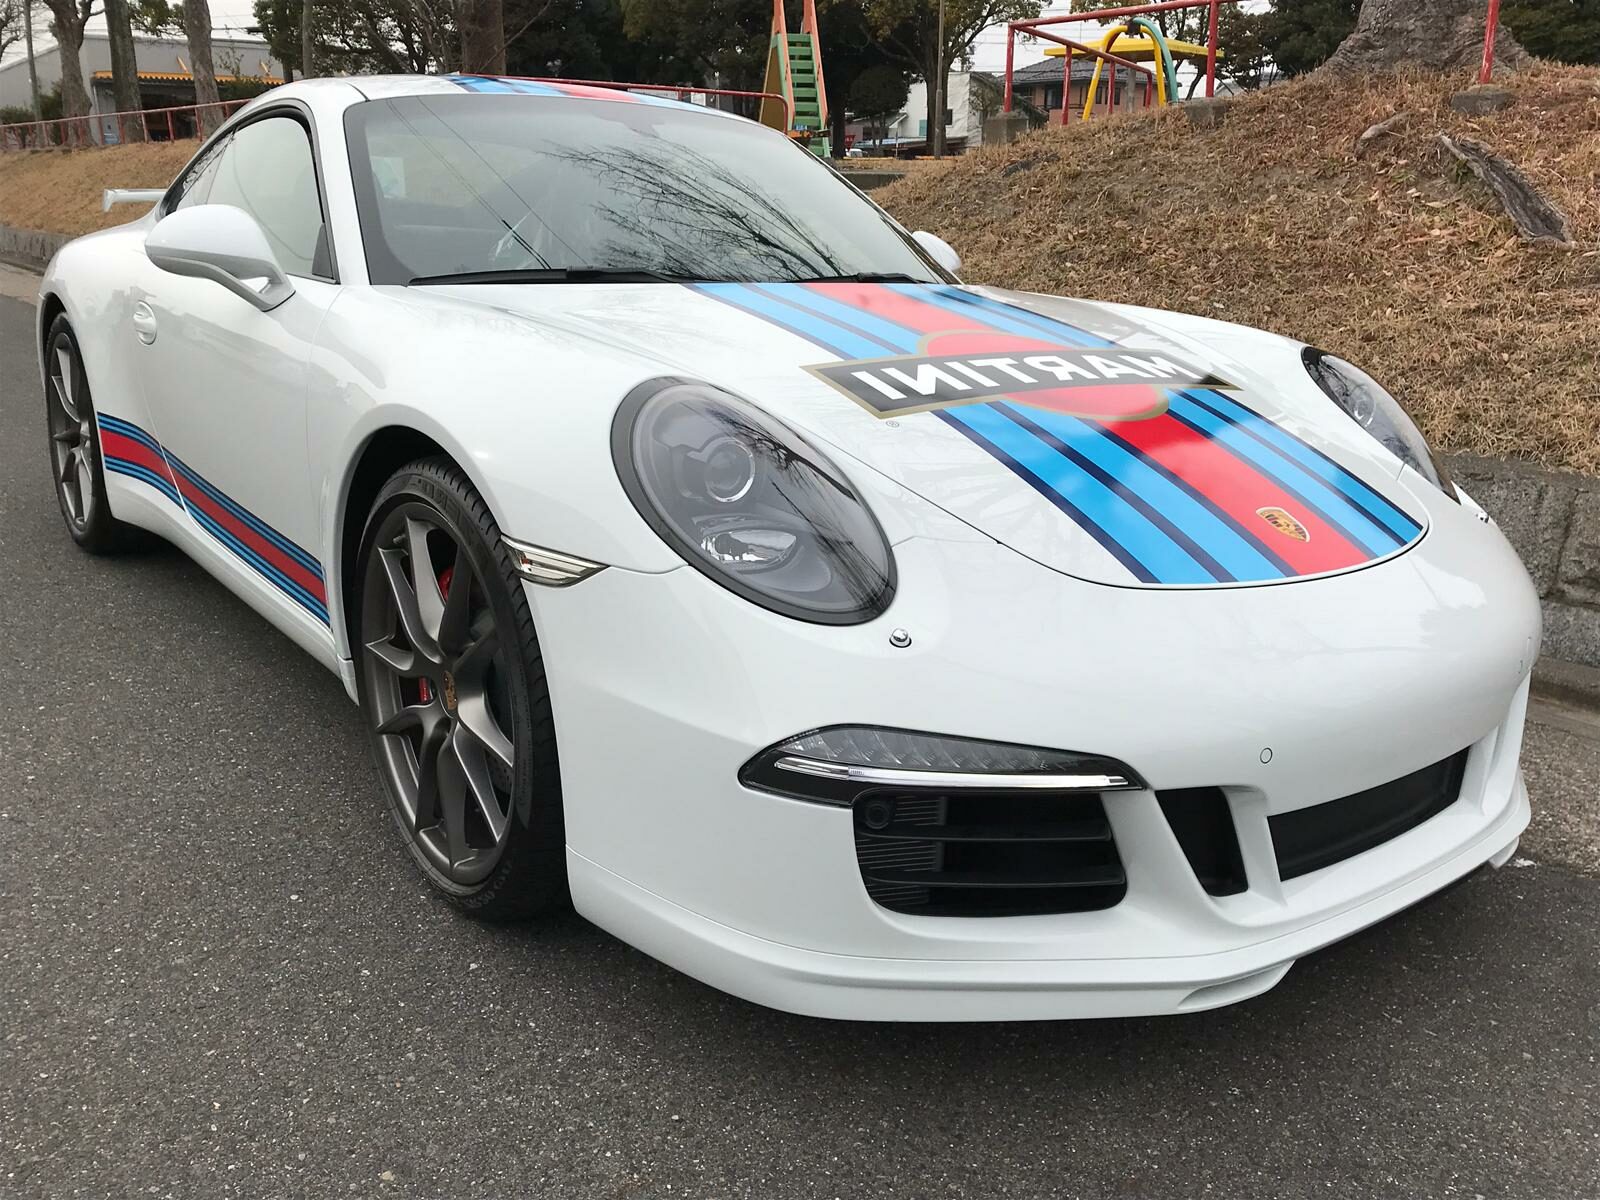 Porsche 911 (991) Martini Racing Edition (1 of 80) - Weststar Motors